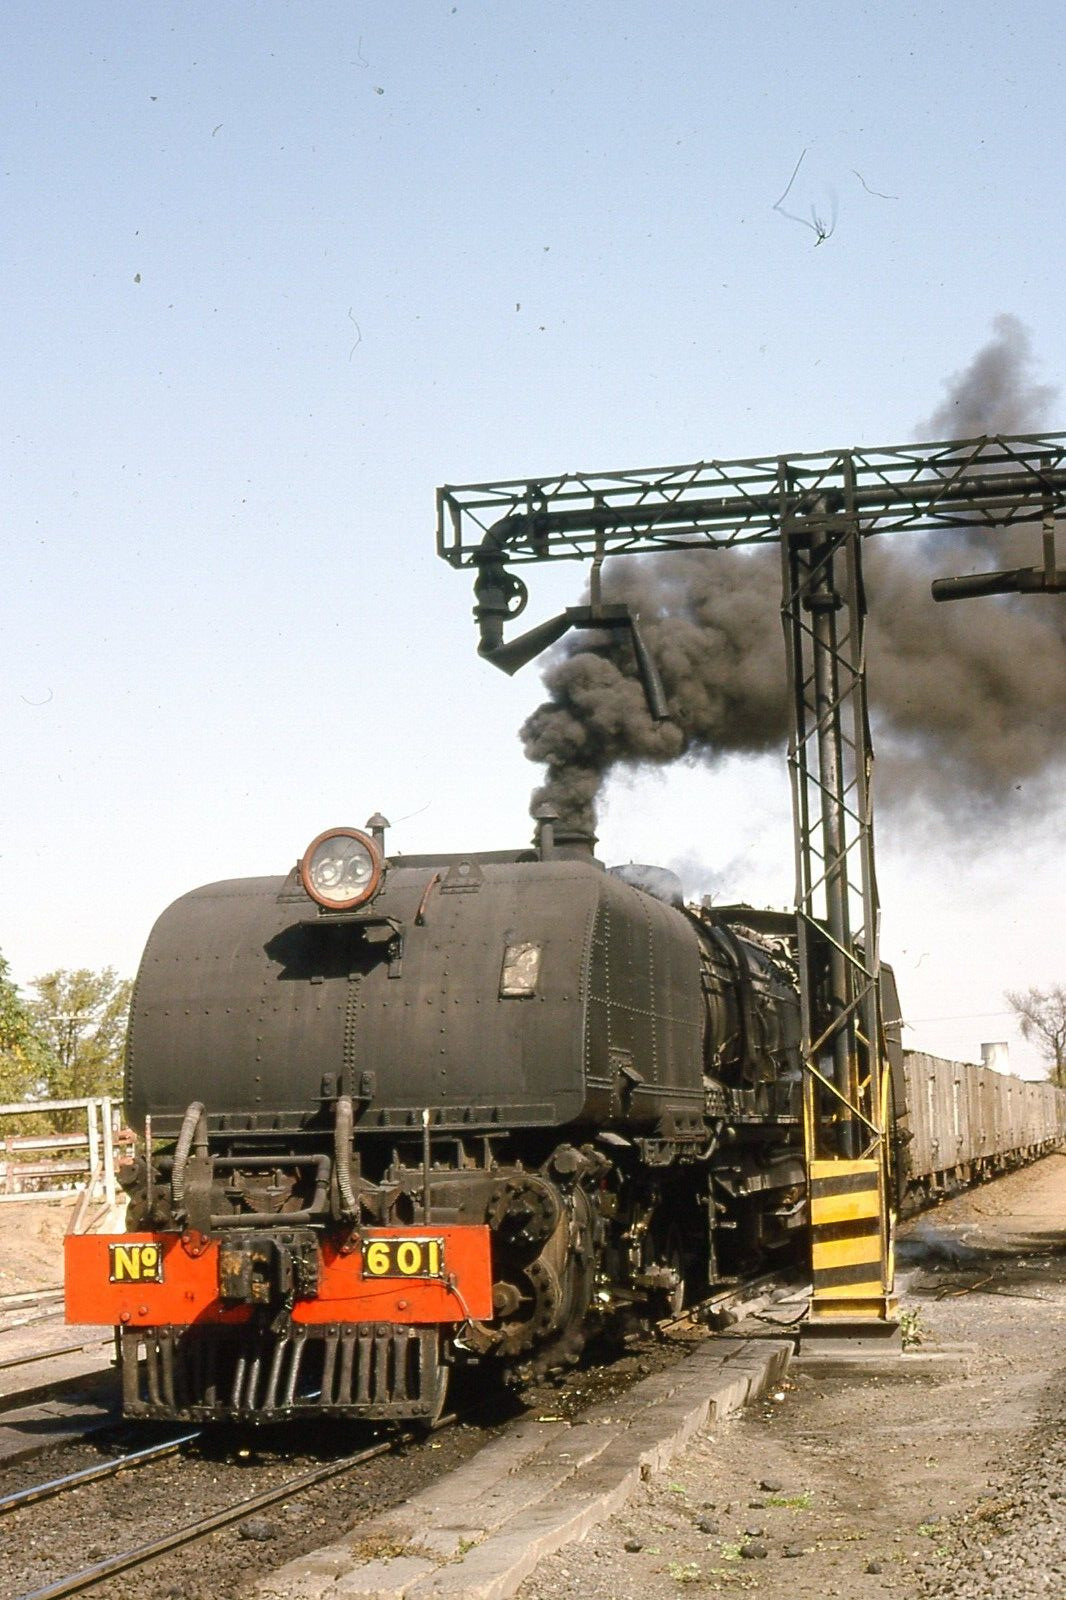 6 x 35mm RAILWAY SLIDES: GARRETT LOCOMOTIVES IN ZIMBABWE 1992